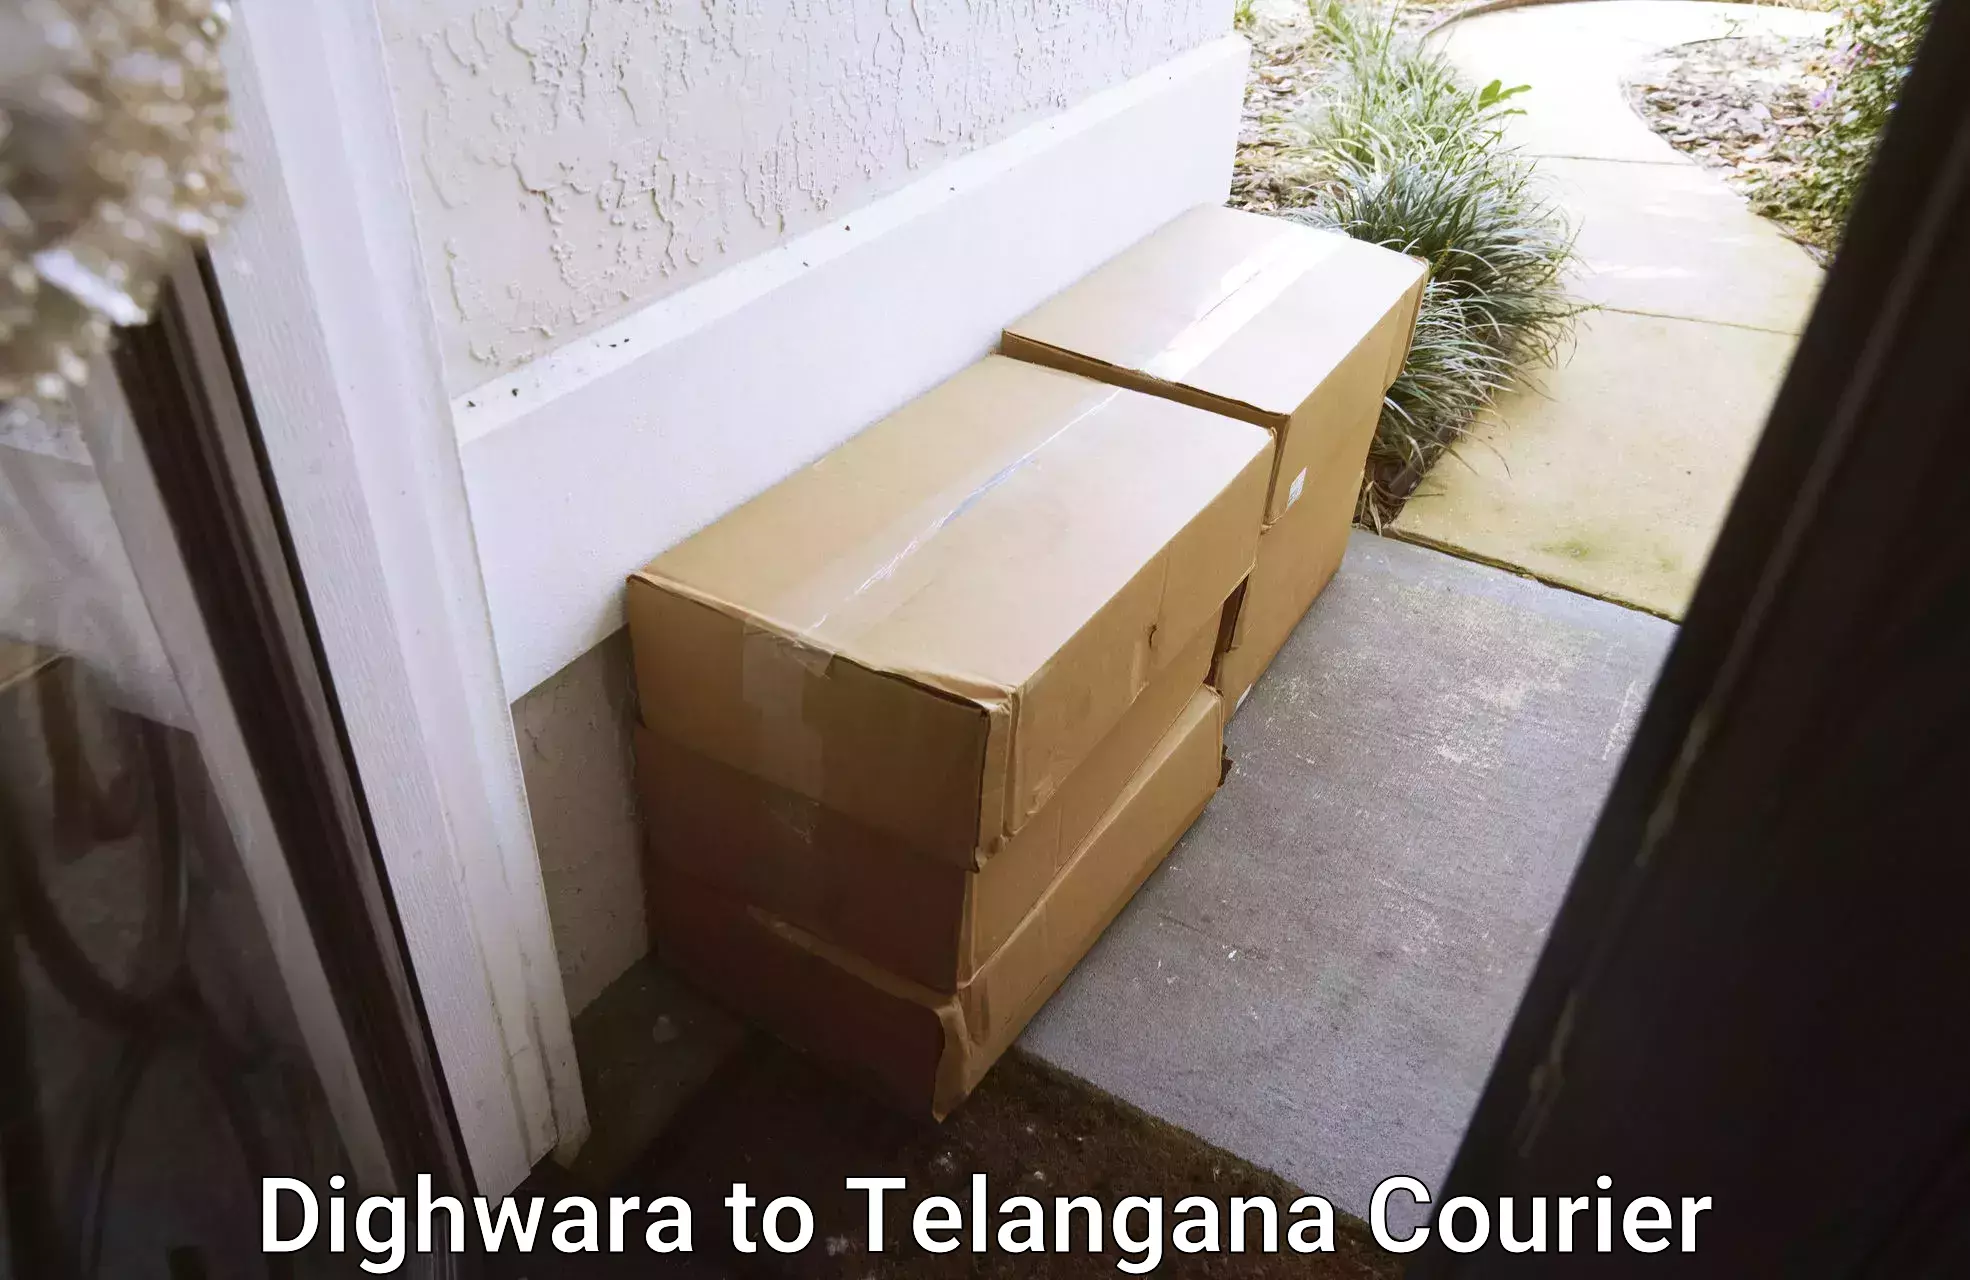 Full-service household moving Dighwara to Telangana